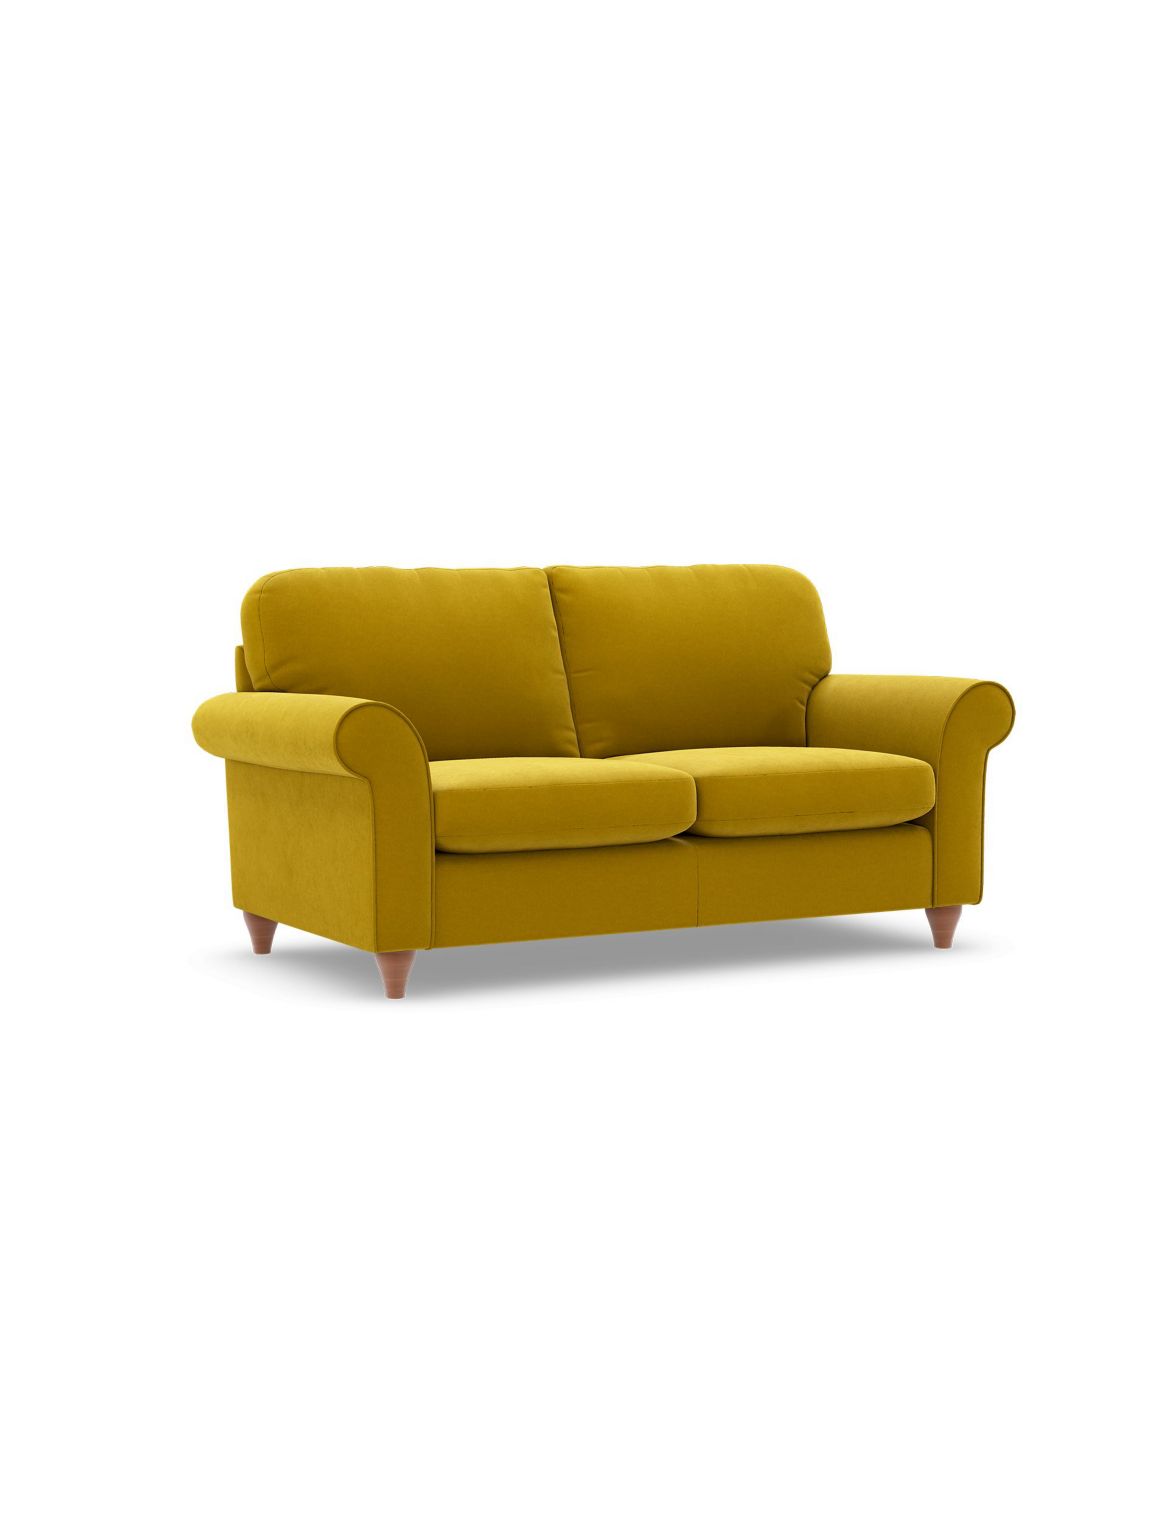 Olivia Small Sofa yellow